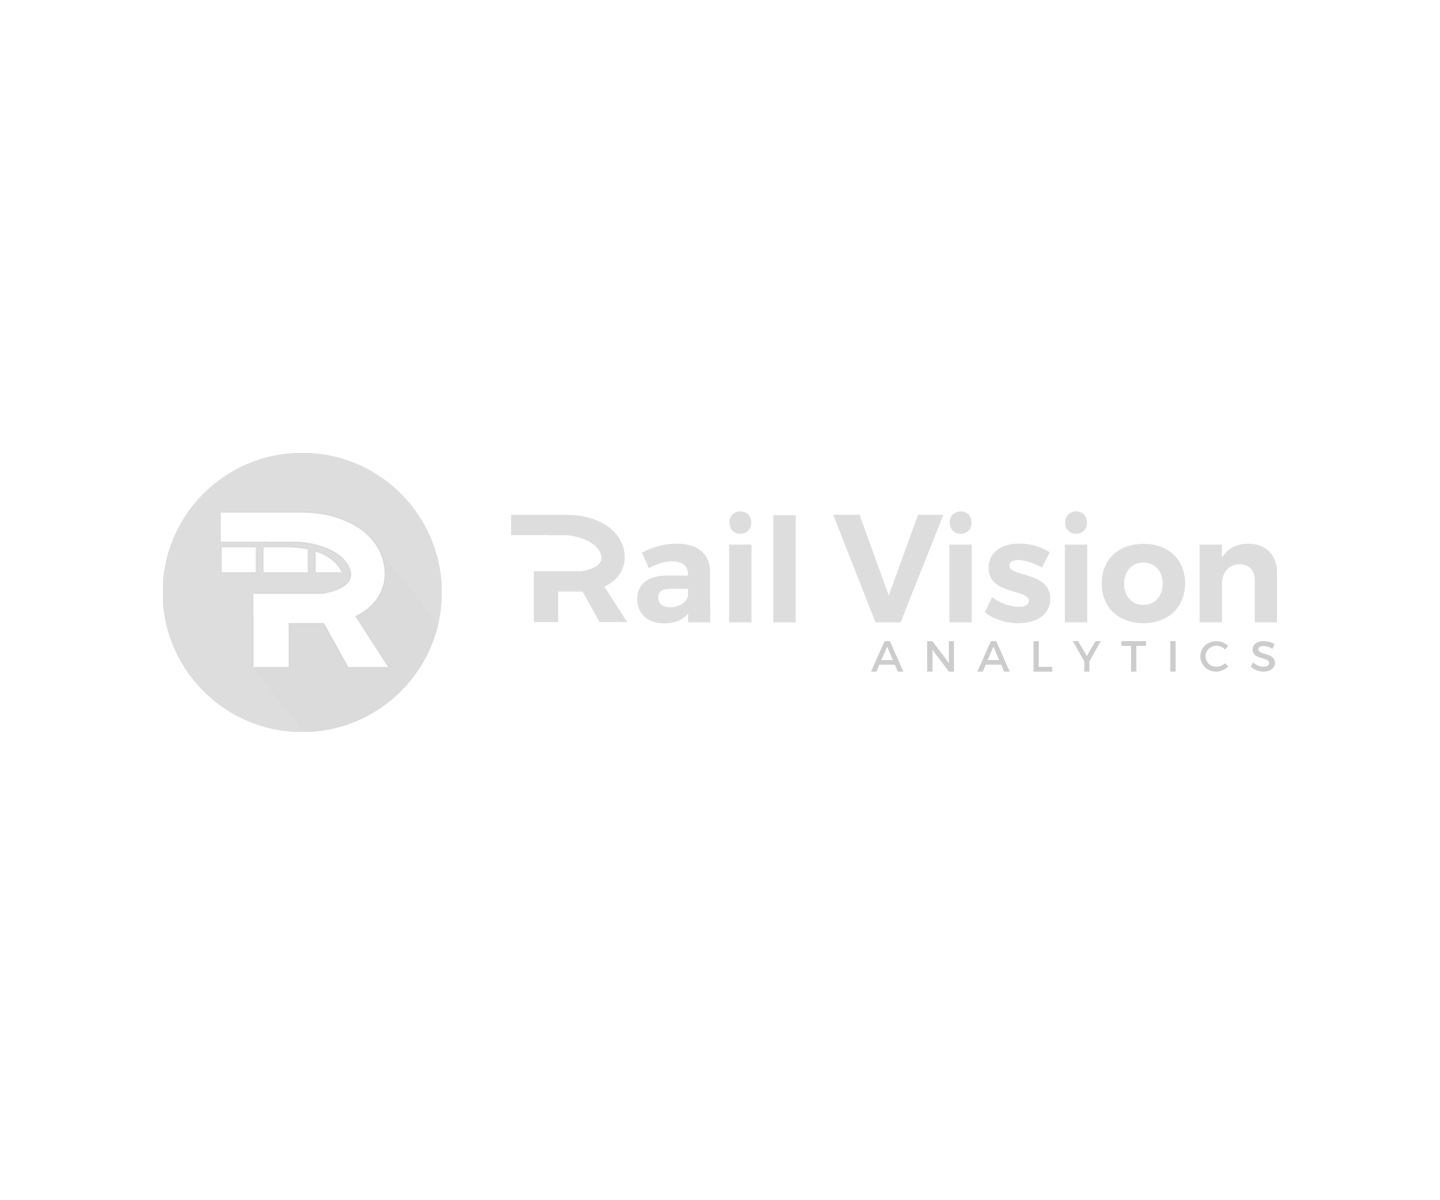 Railvision